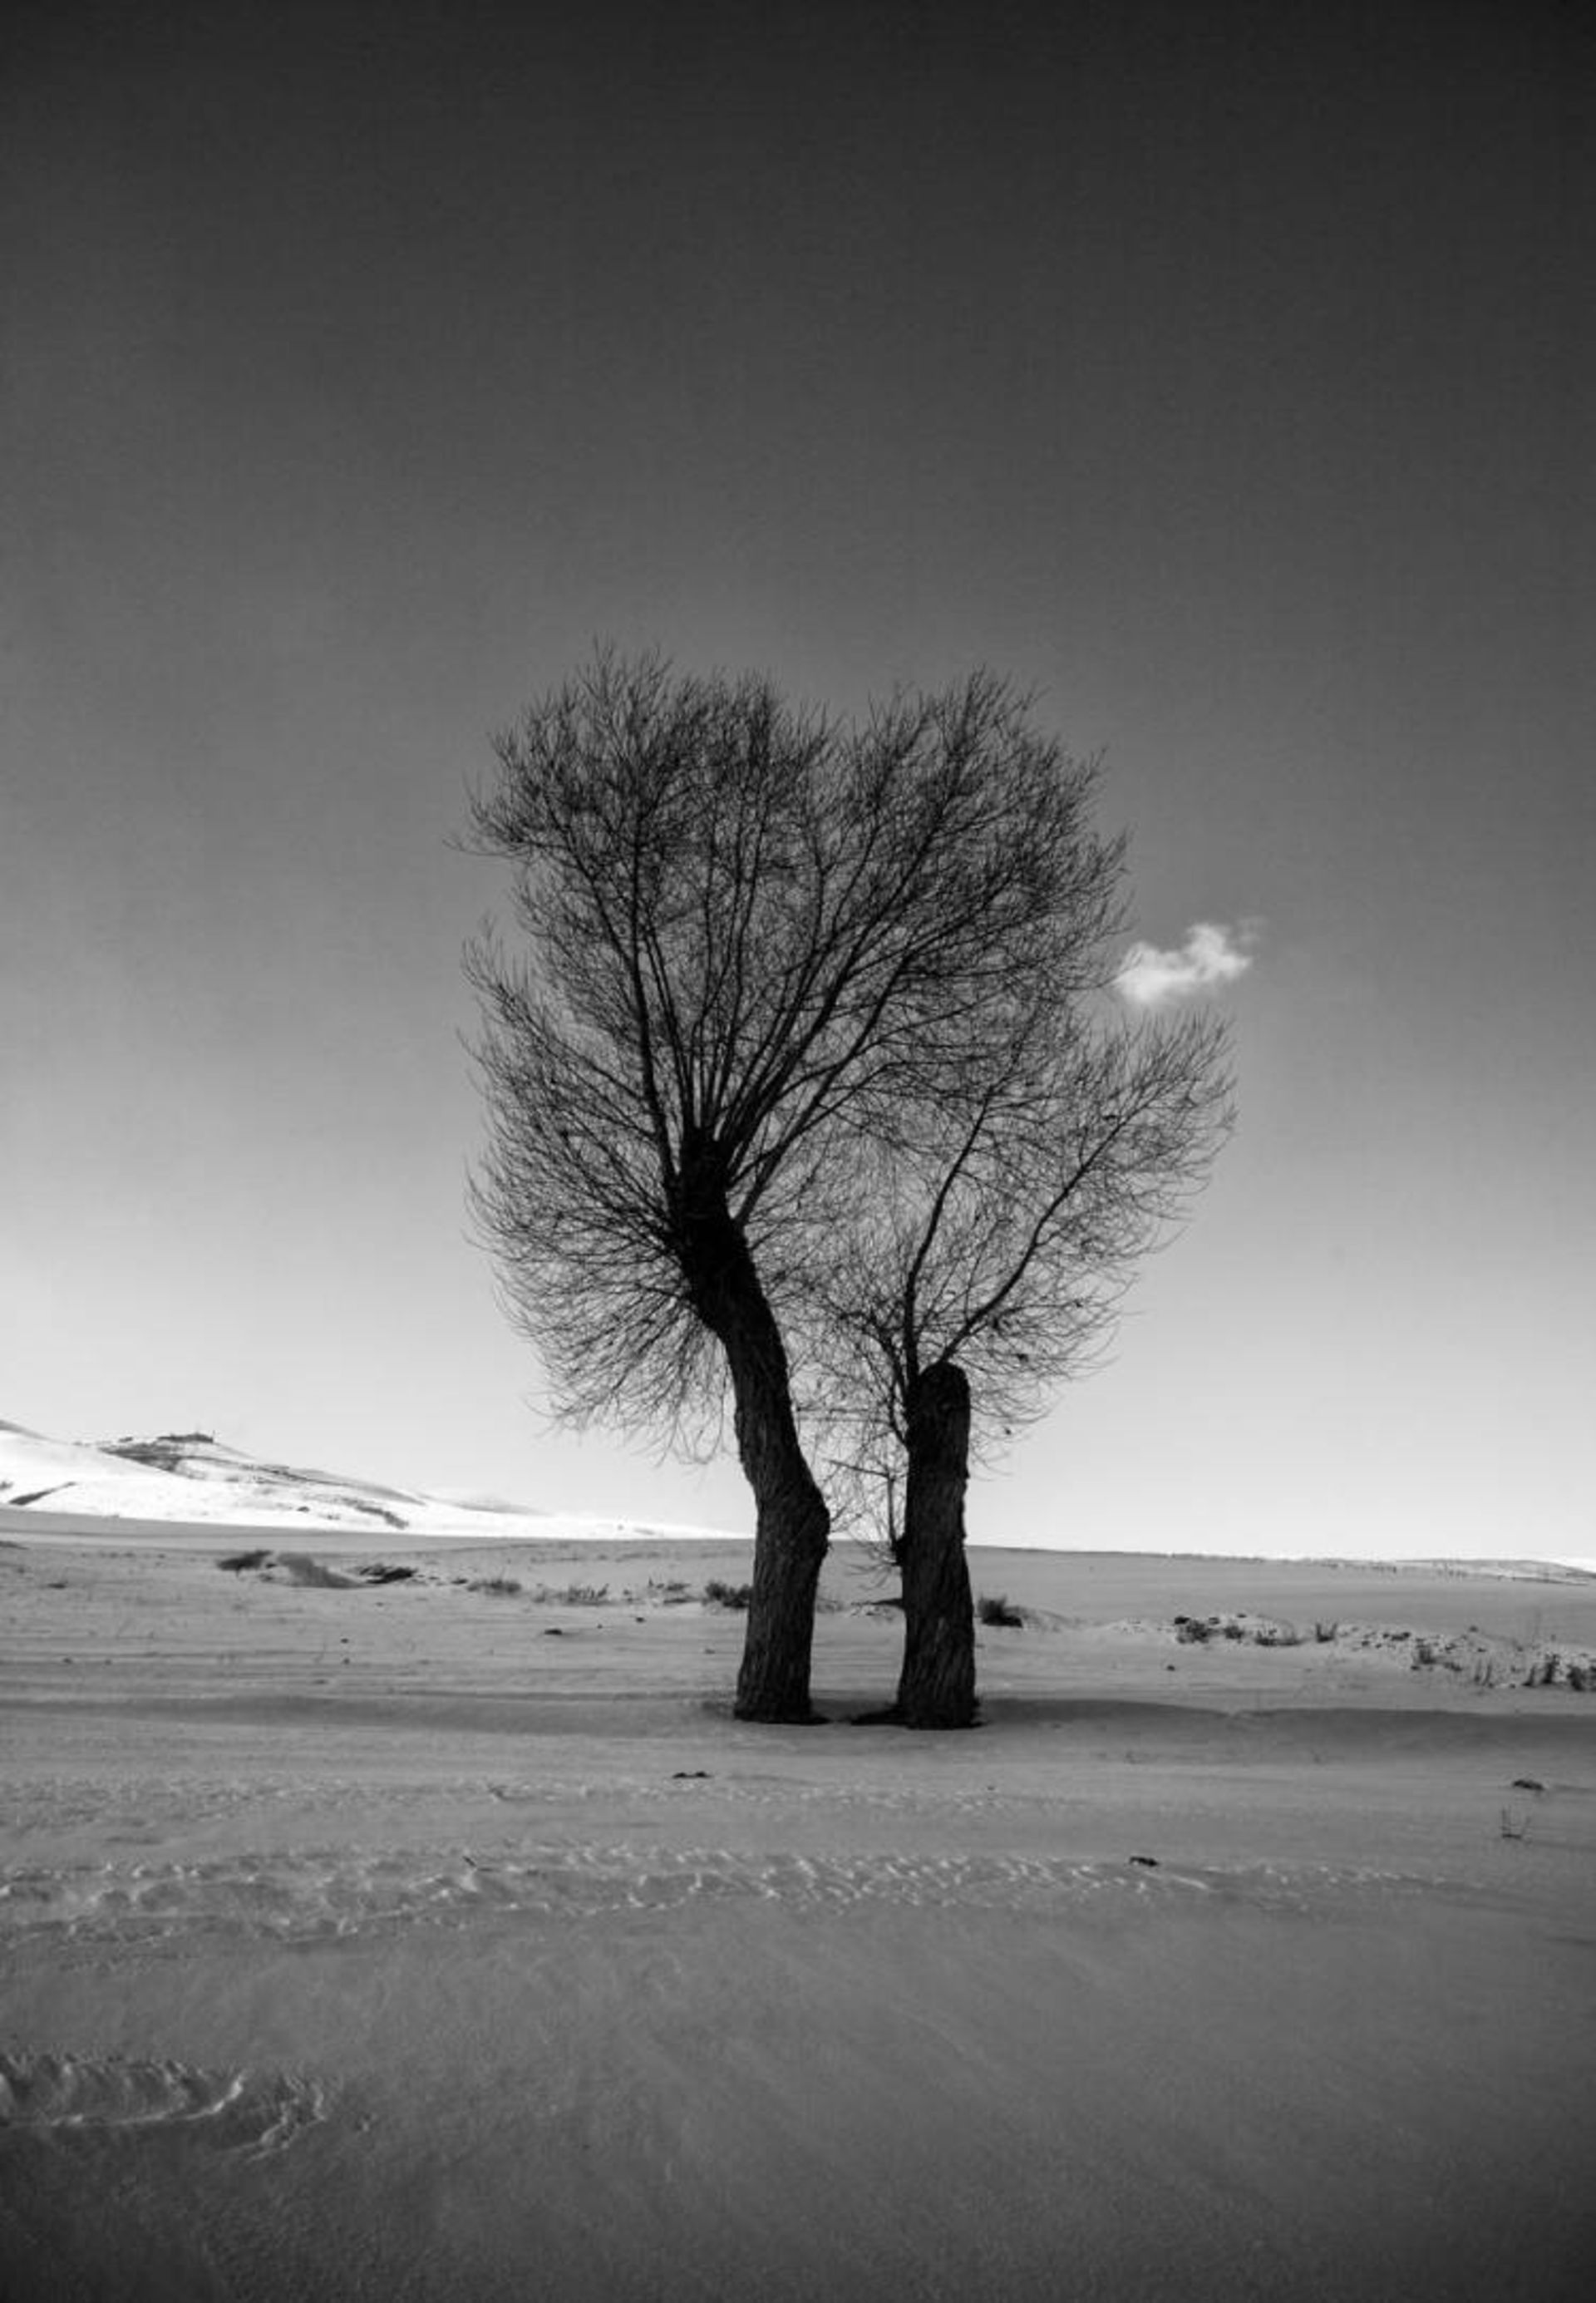 مرجع متخصصين ايران نمونه تصوير گرفته شده از درختان توسط علي شكري